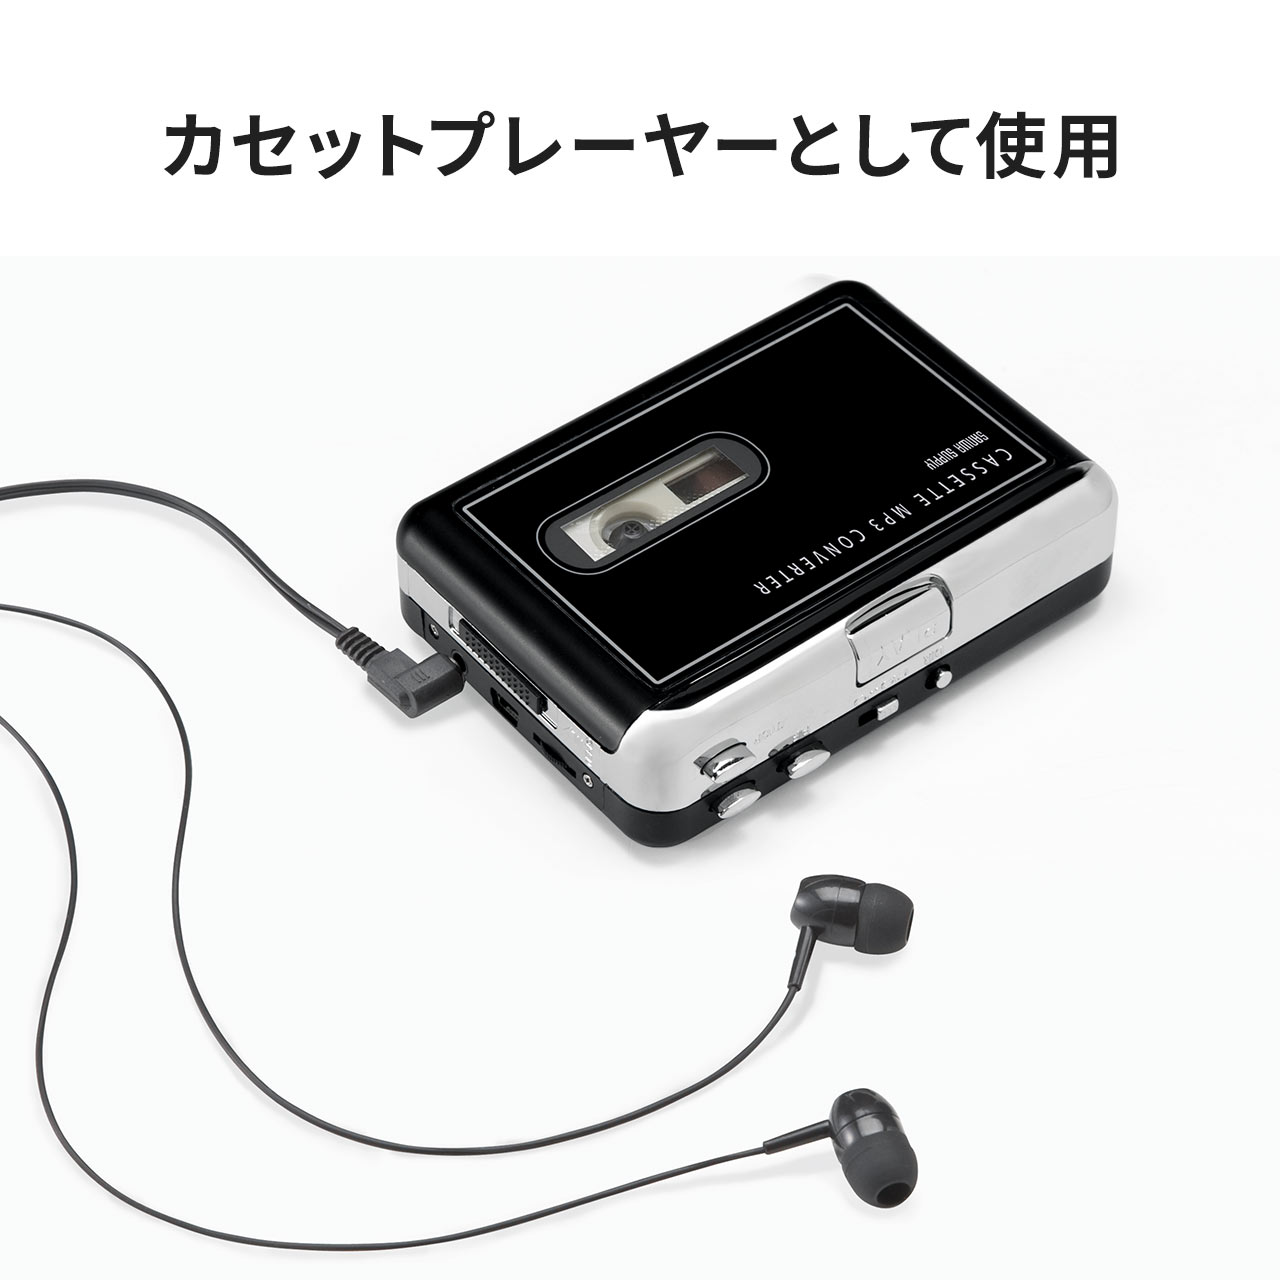 限定製作】 カセットテープ MP3 変換プレーヤー ラジカセ カセットテーププレーヤー カセットテープレコーダー デジタル化 ポータブルオーディオ プレーヤー